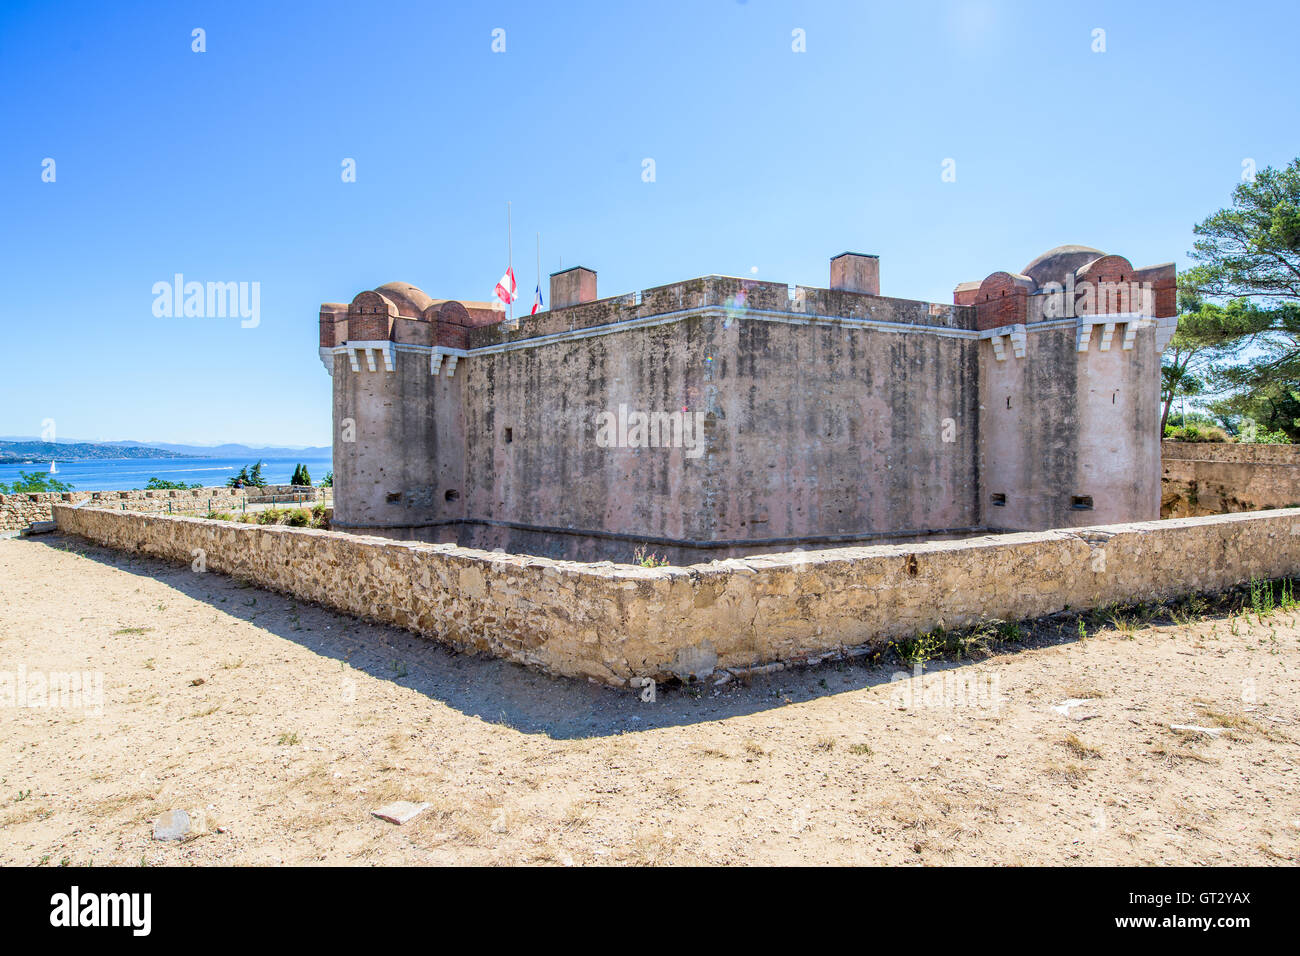 Citadel of Saint-Tropez Stock Photo